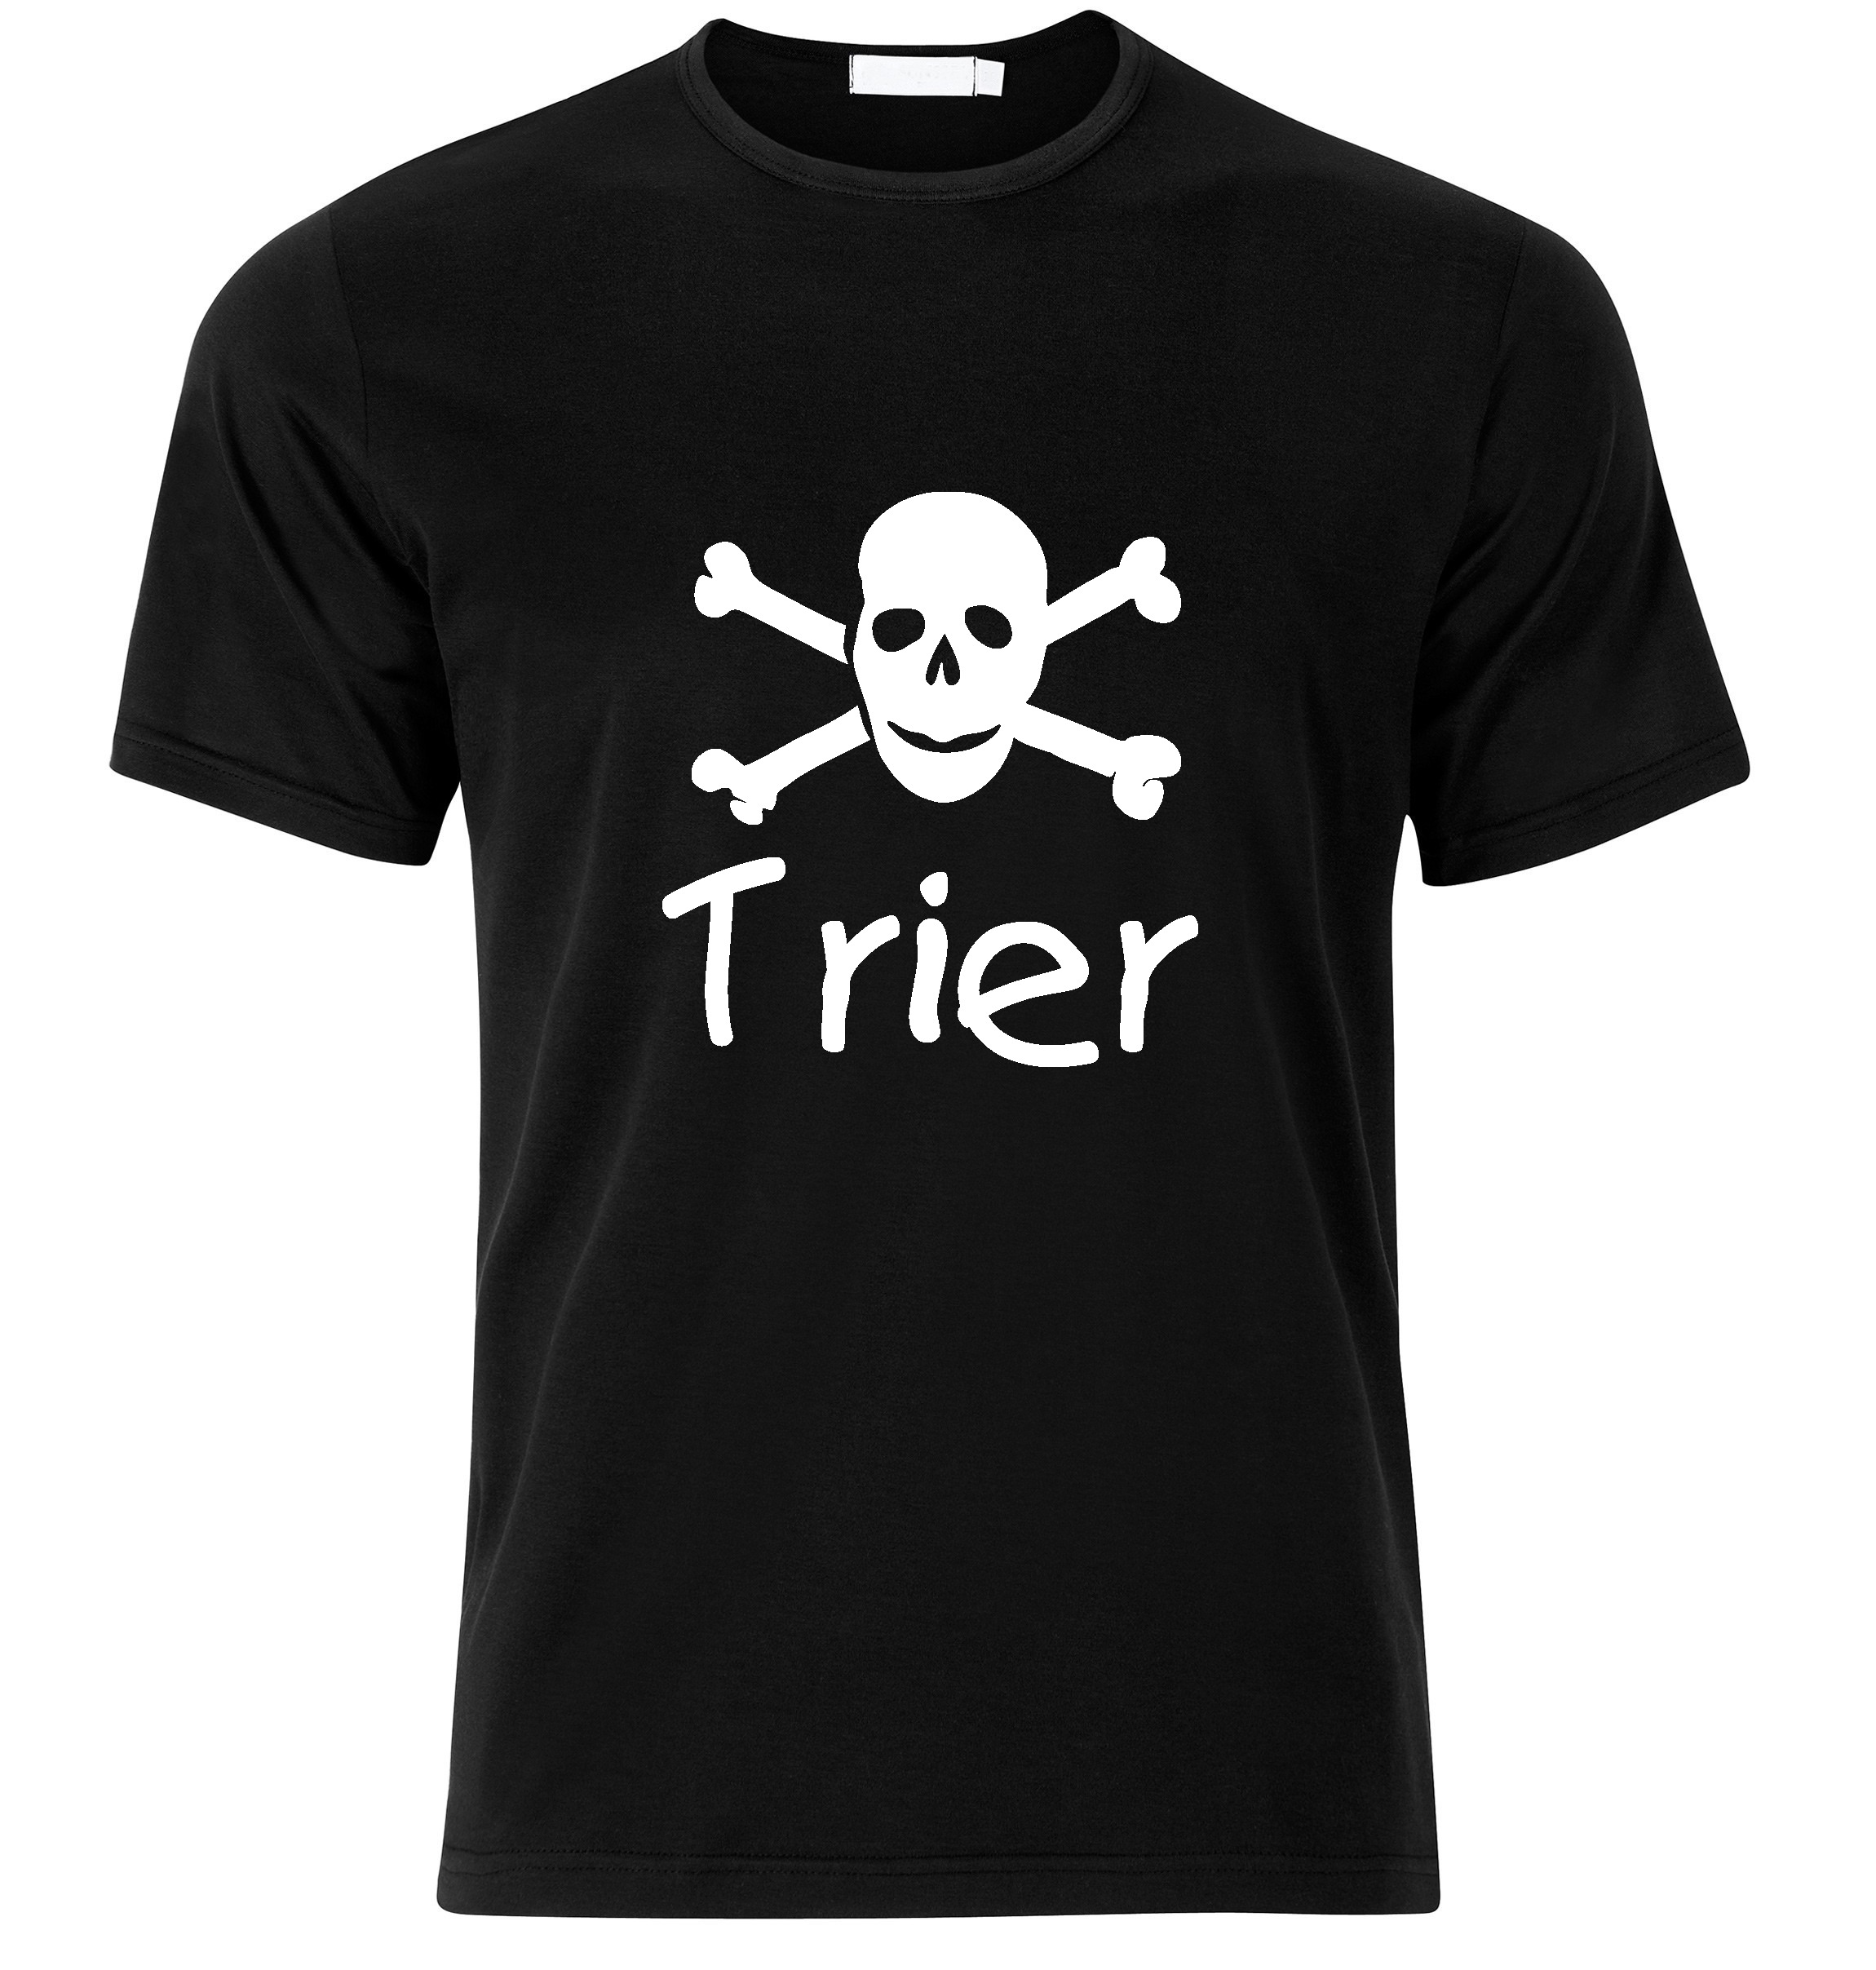 T-Shirt Trier Jolly Roger, Totenkopf